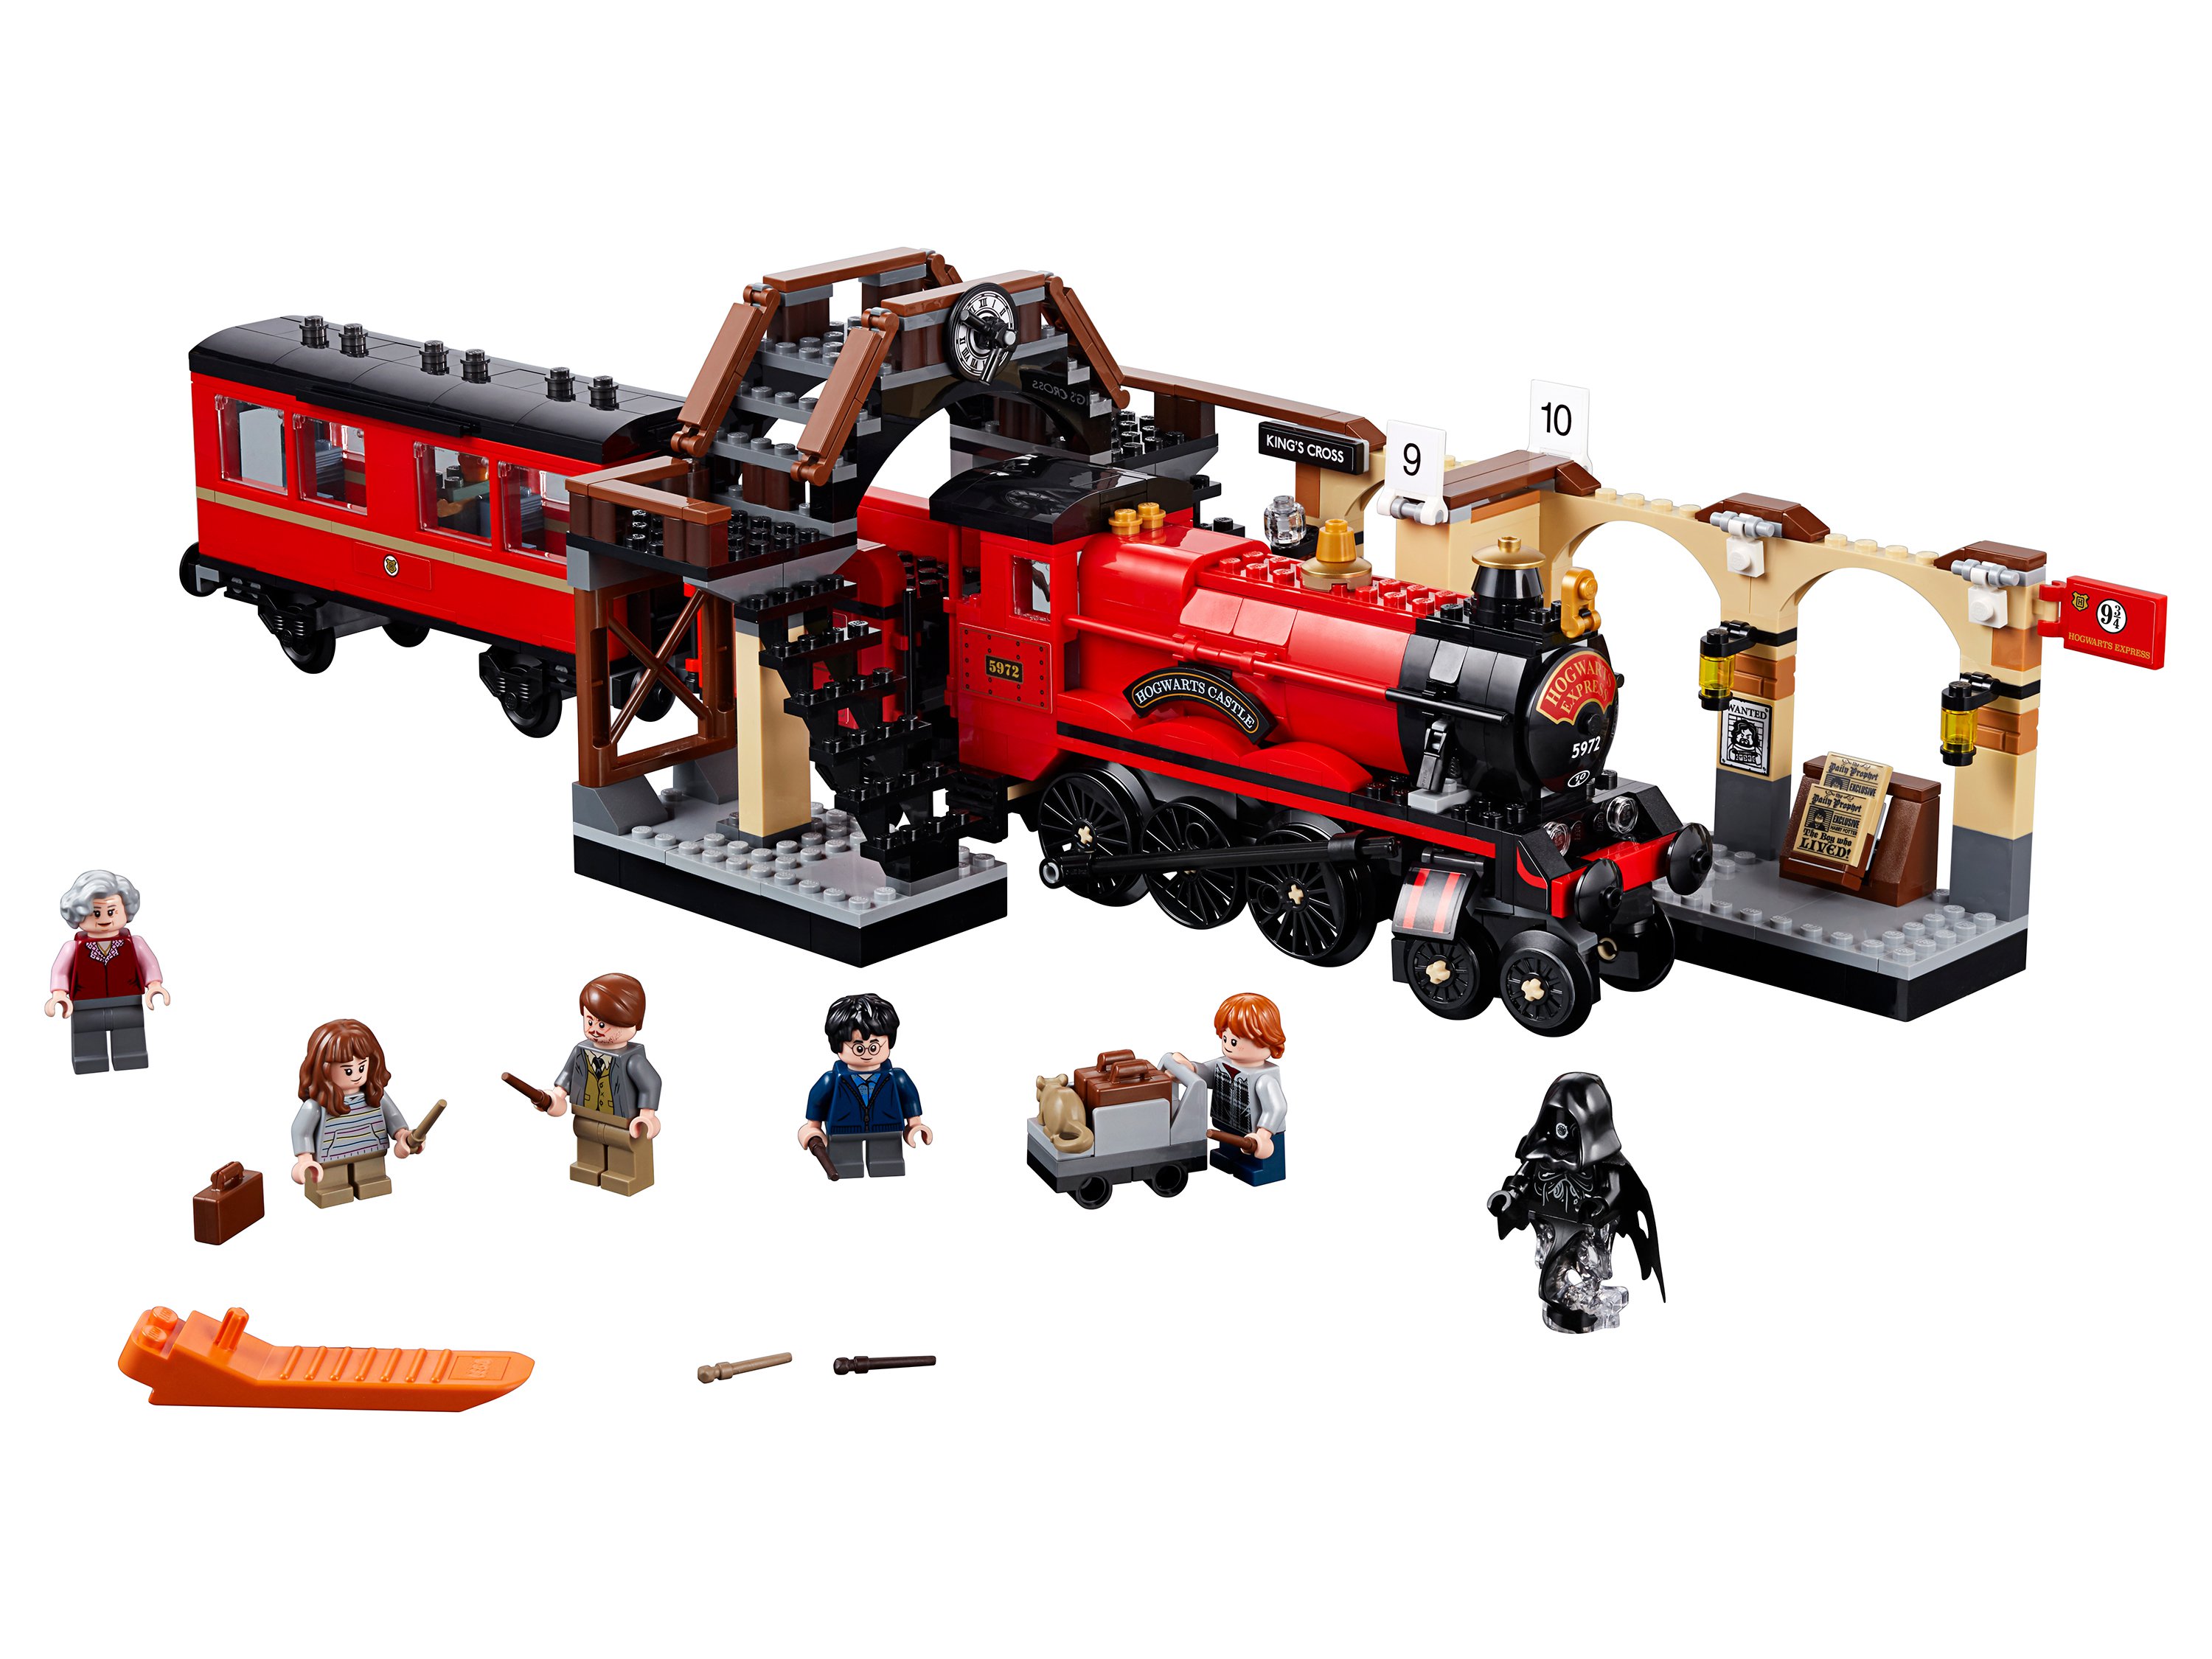 Lego Harry Potter 75955 Хогвартс-экспресс